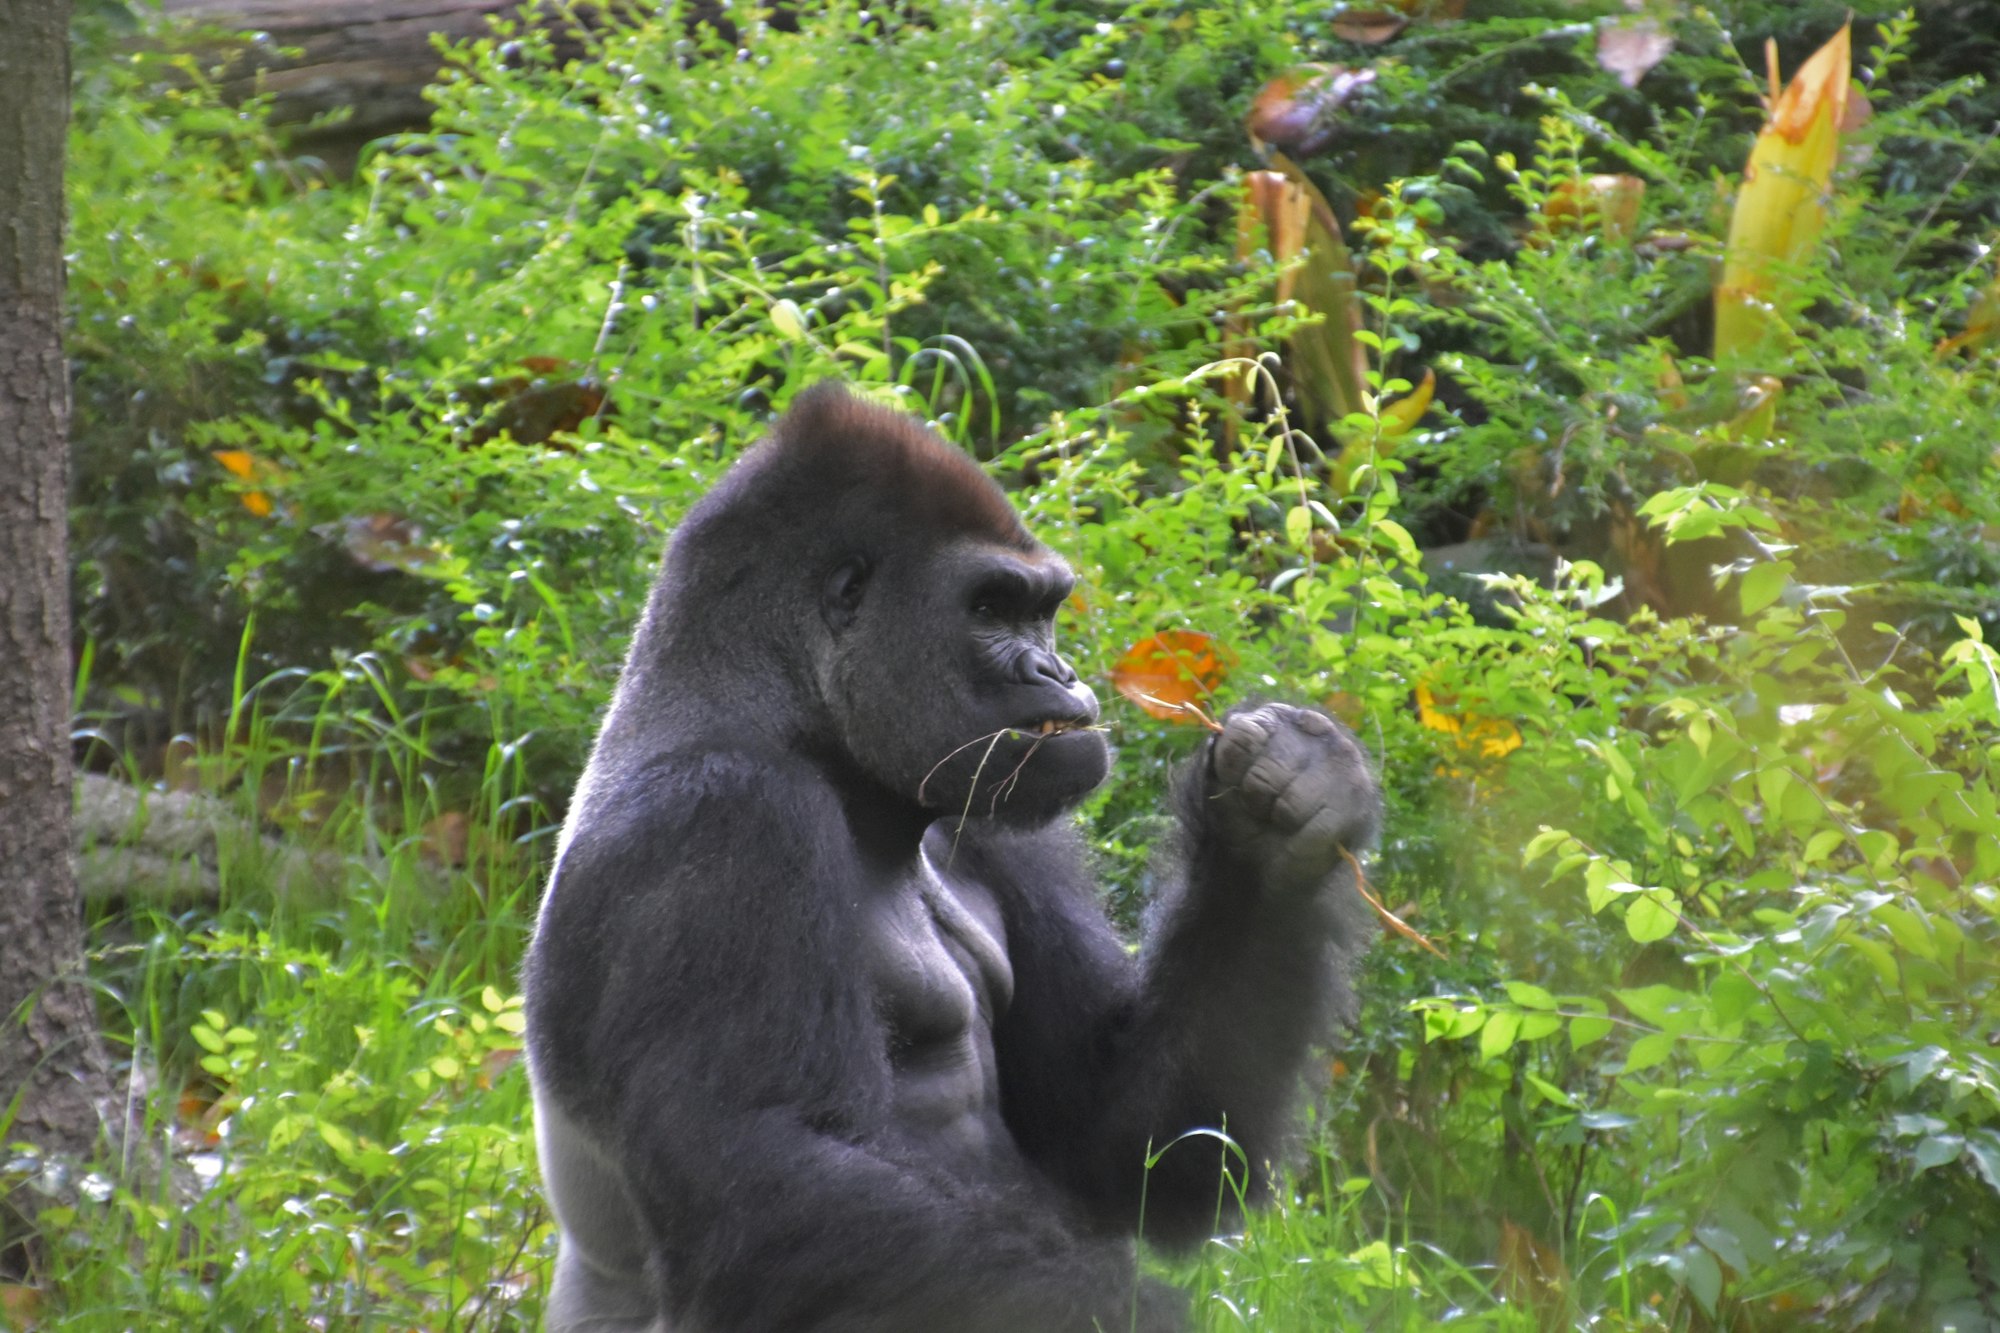 a gorilla eating a flower